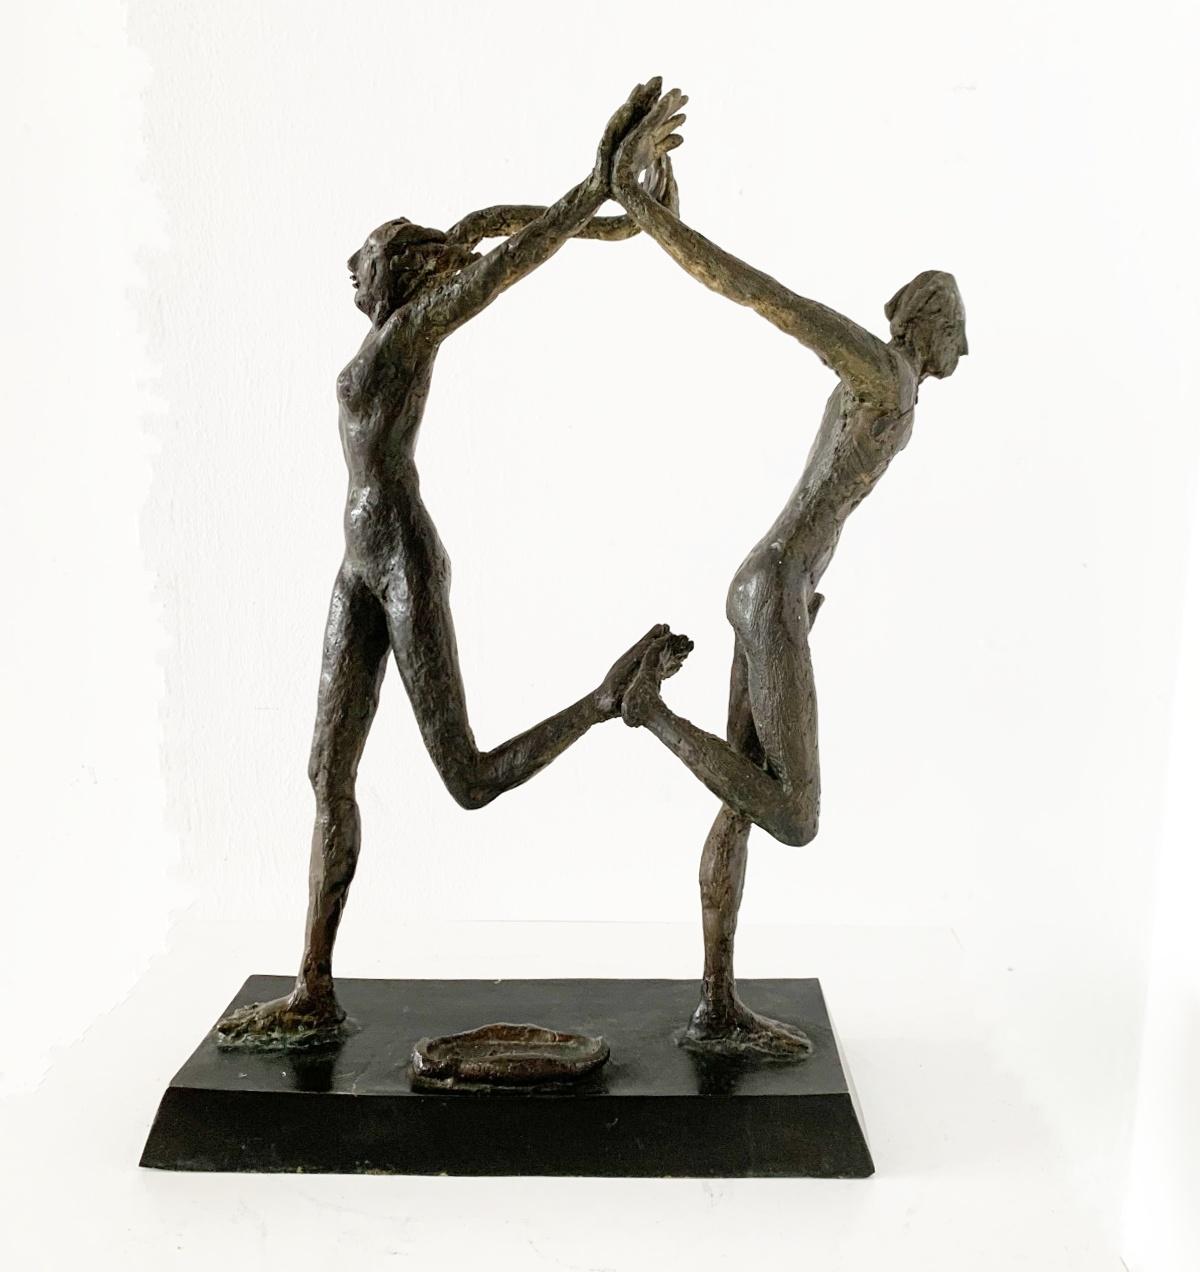 Giuseppe del Debbio Figurative Sculpture – Gemeinsam tanzen. Zeitgenössische figurative Bronzeskulptur, italienischer Künstler